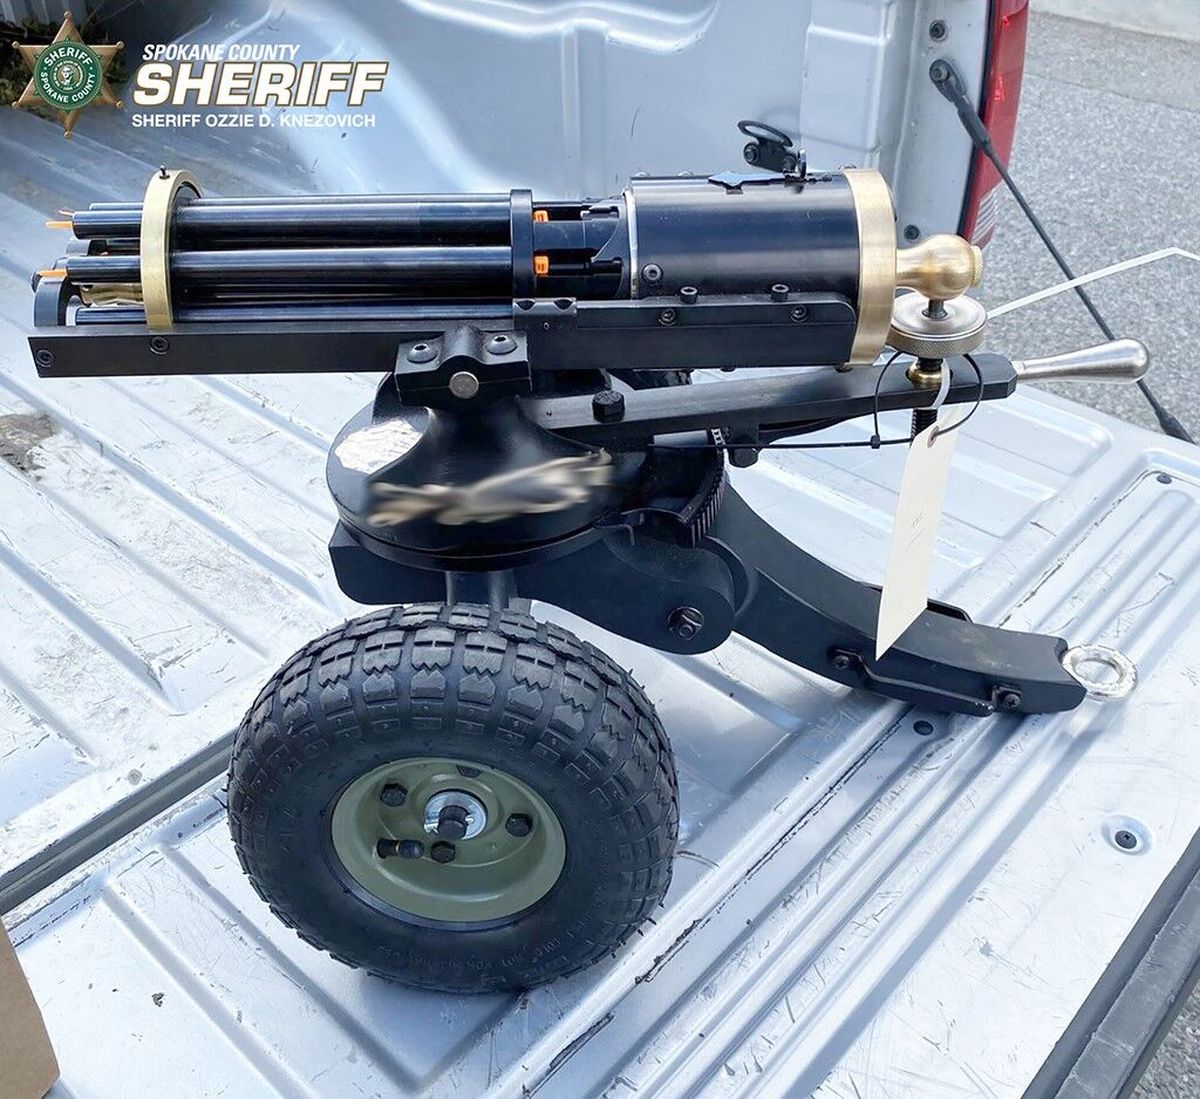  Tippman Armory Gatling Gun.  (Spokane County Sheriff